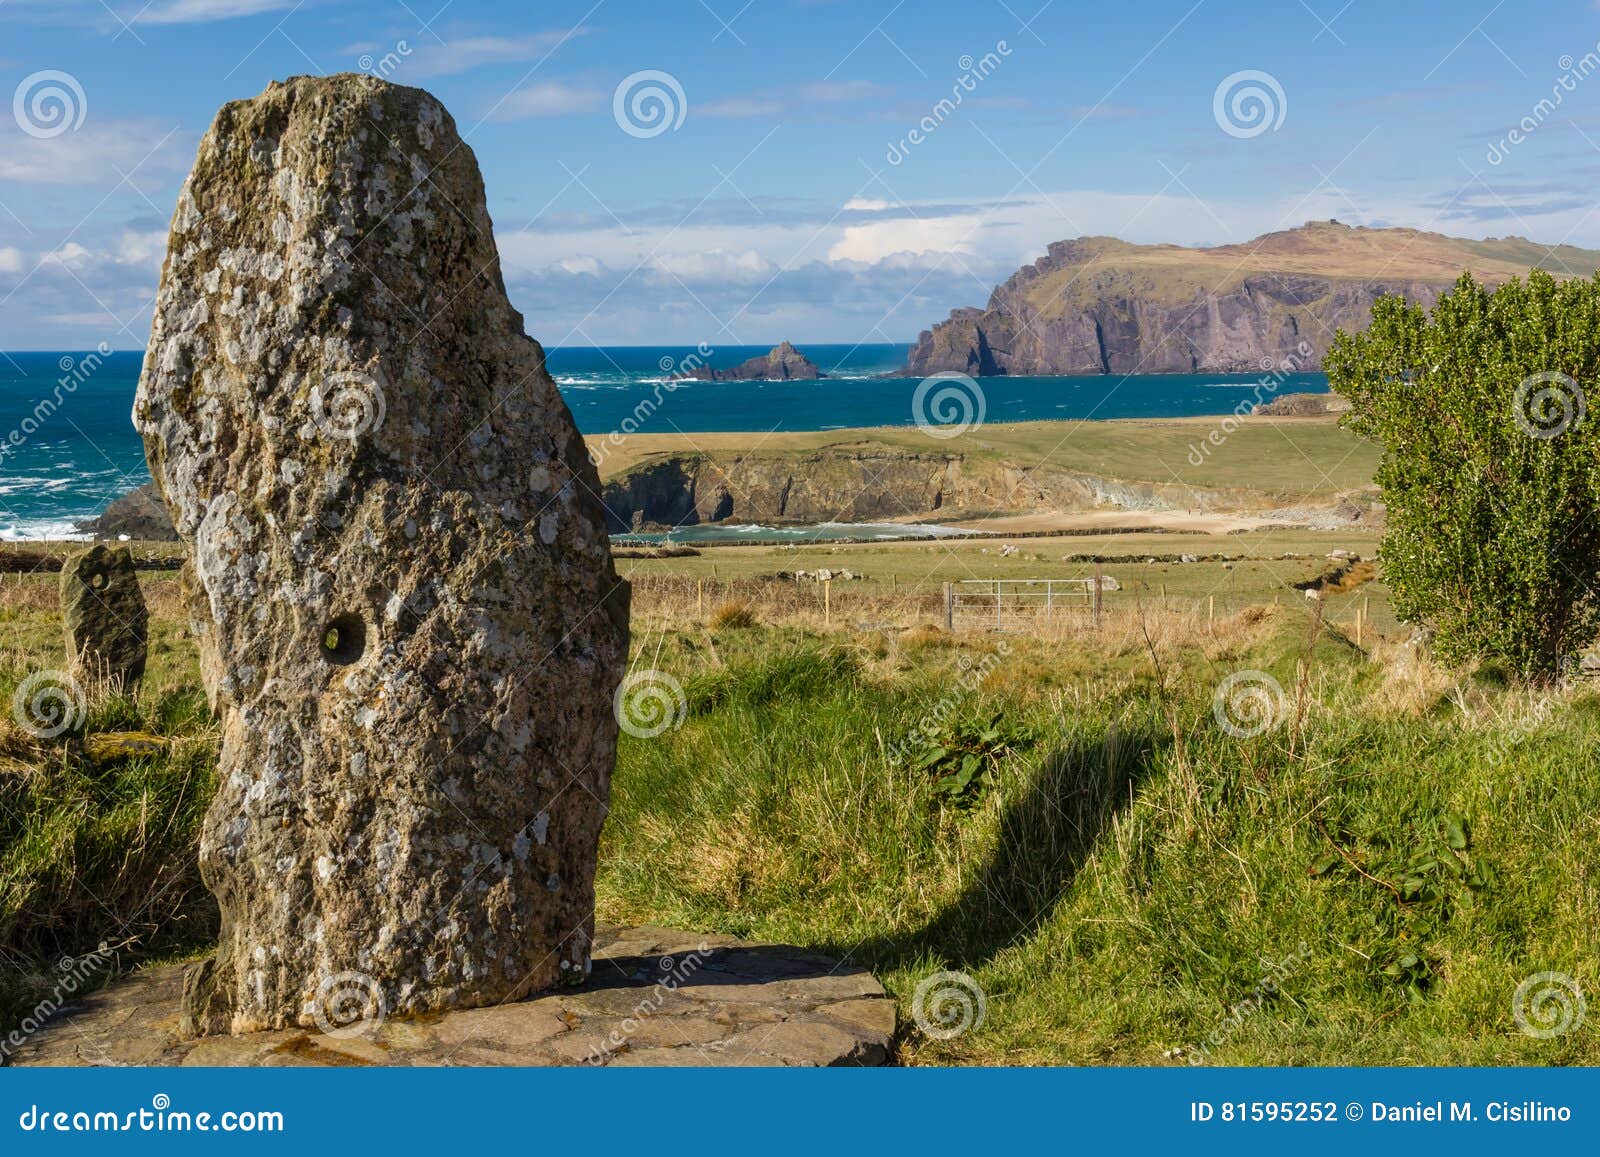 old stone monument. dingle peninsula ireland